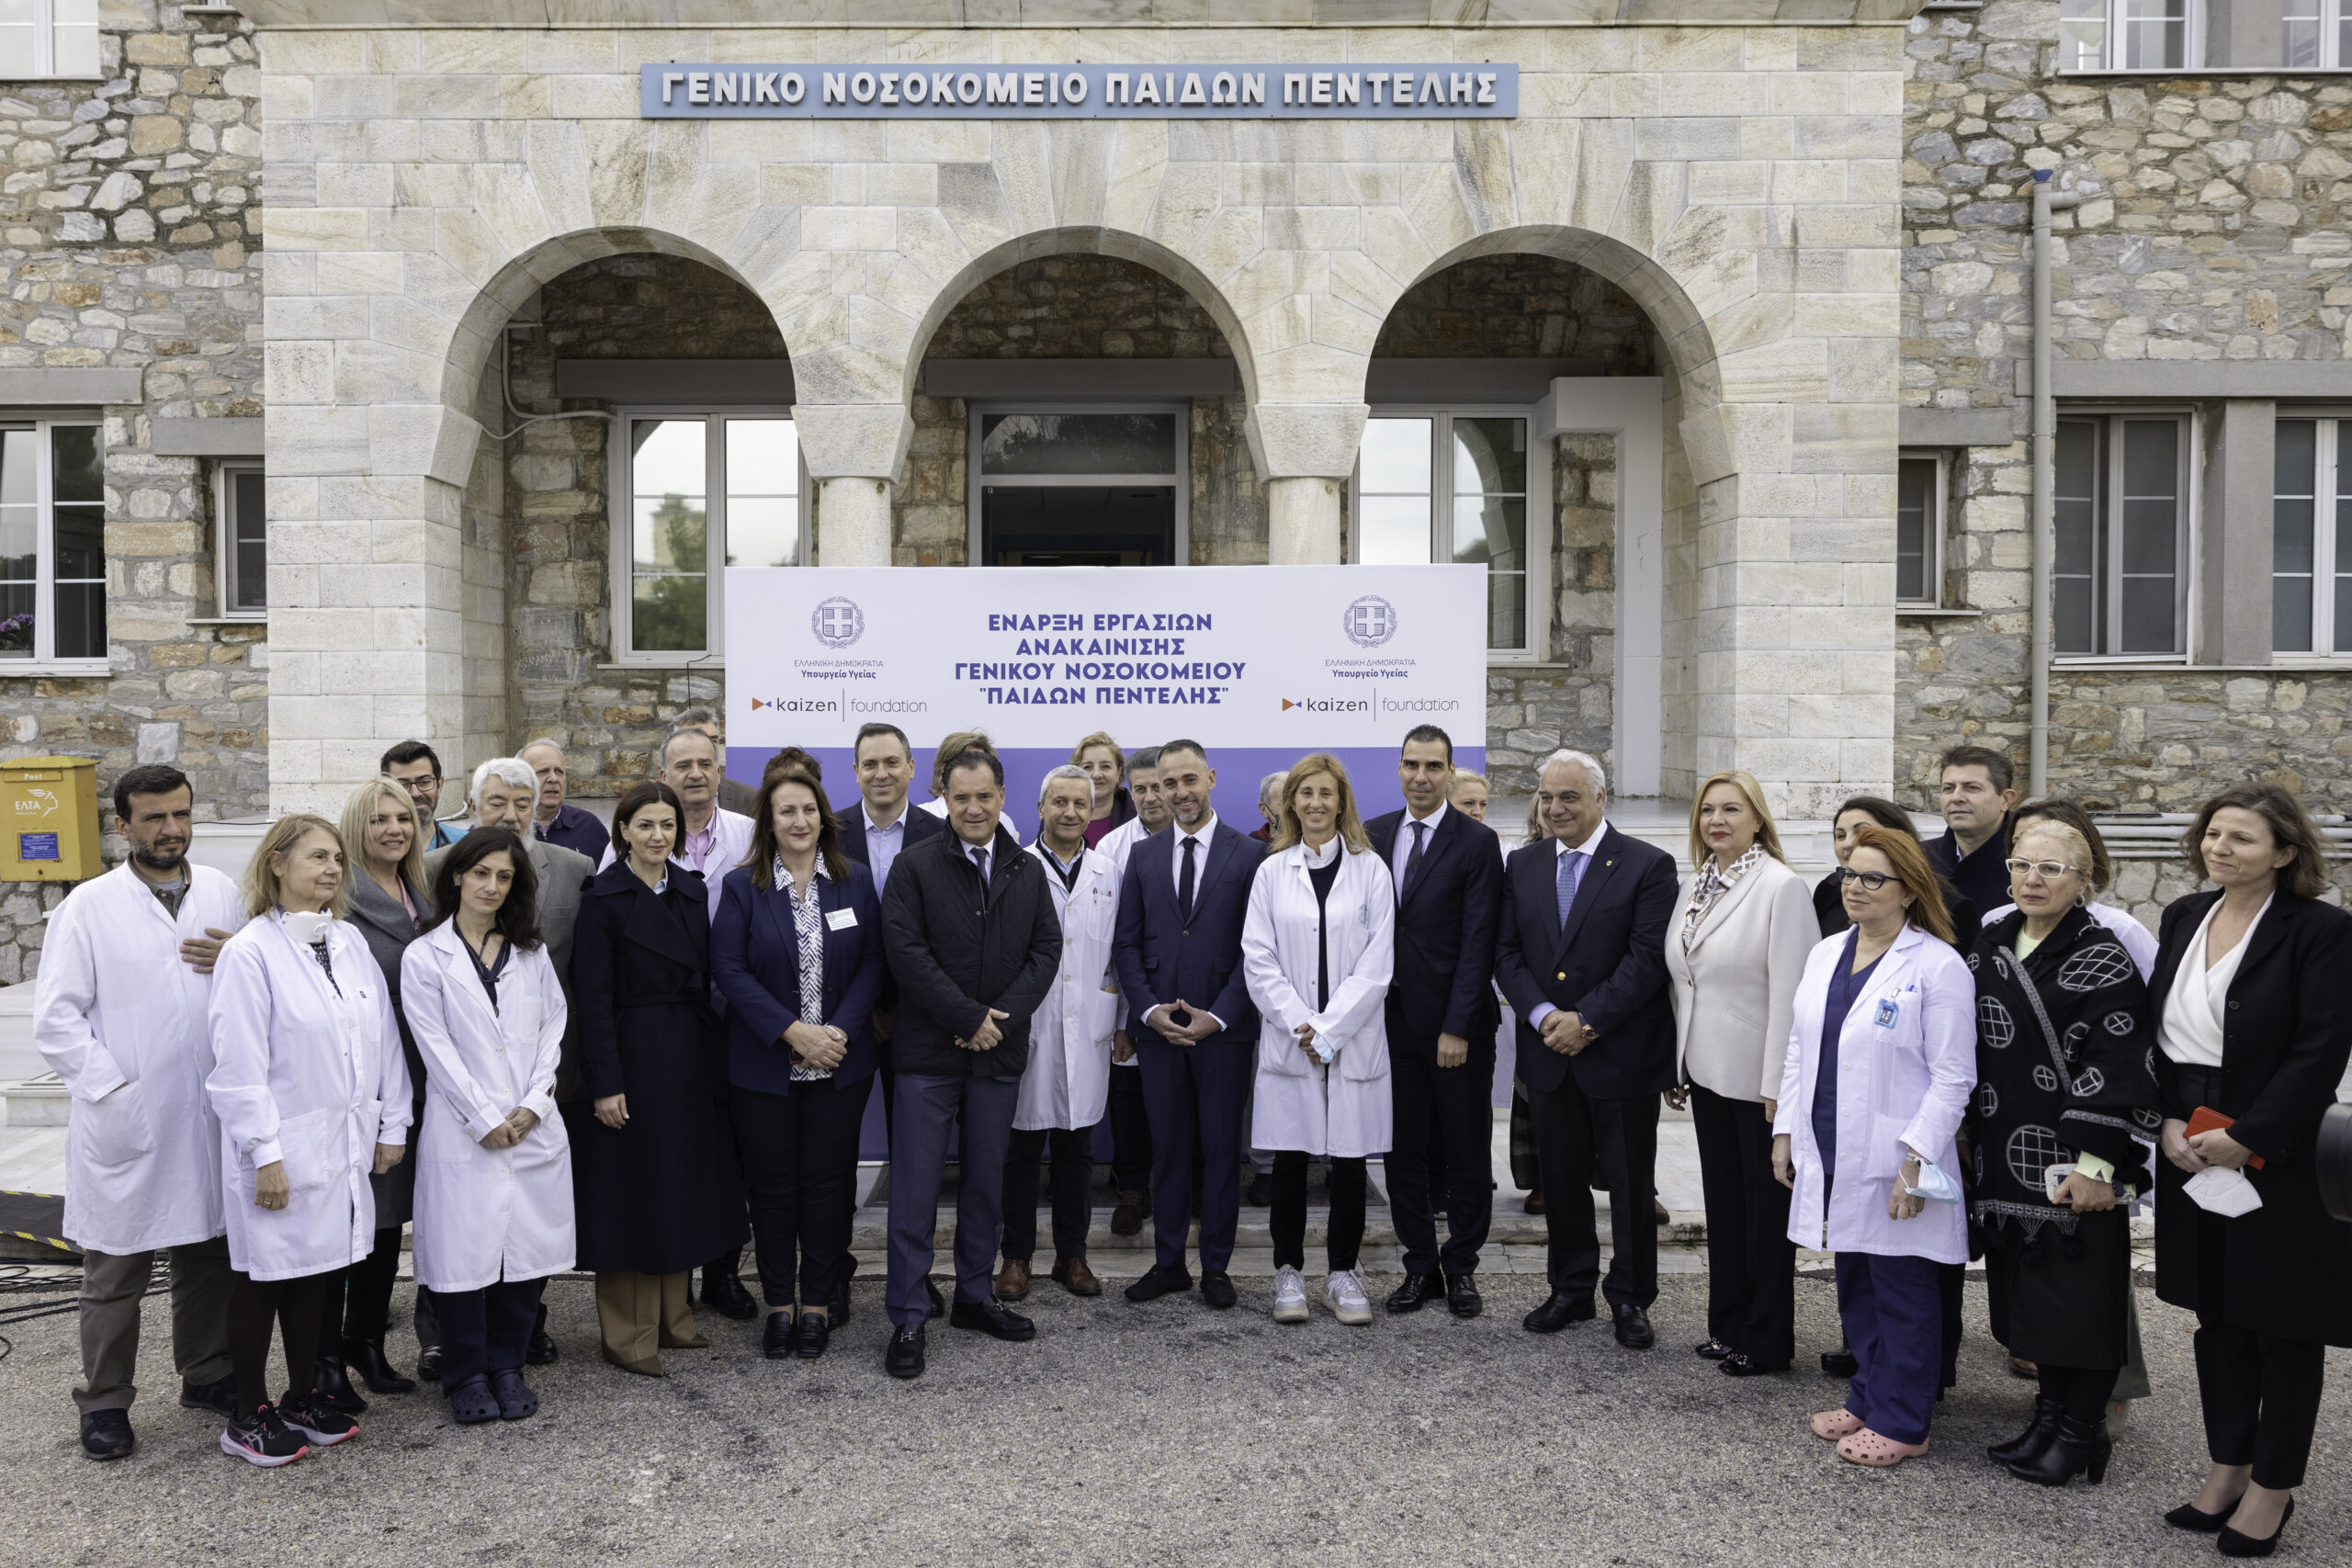 Το Kaizen Foundation ανακαινίζει το Παίδων Πεντέλης – Μια δωρεά 3,8 εκατομμυρίων ευρώ που θα αλλάξει το νοσοκομείο